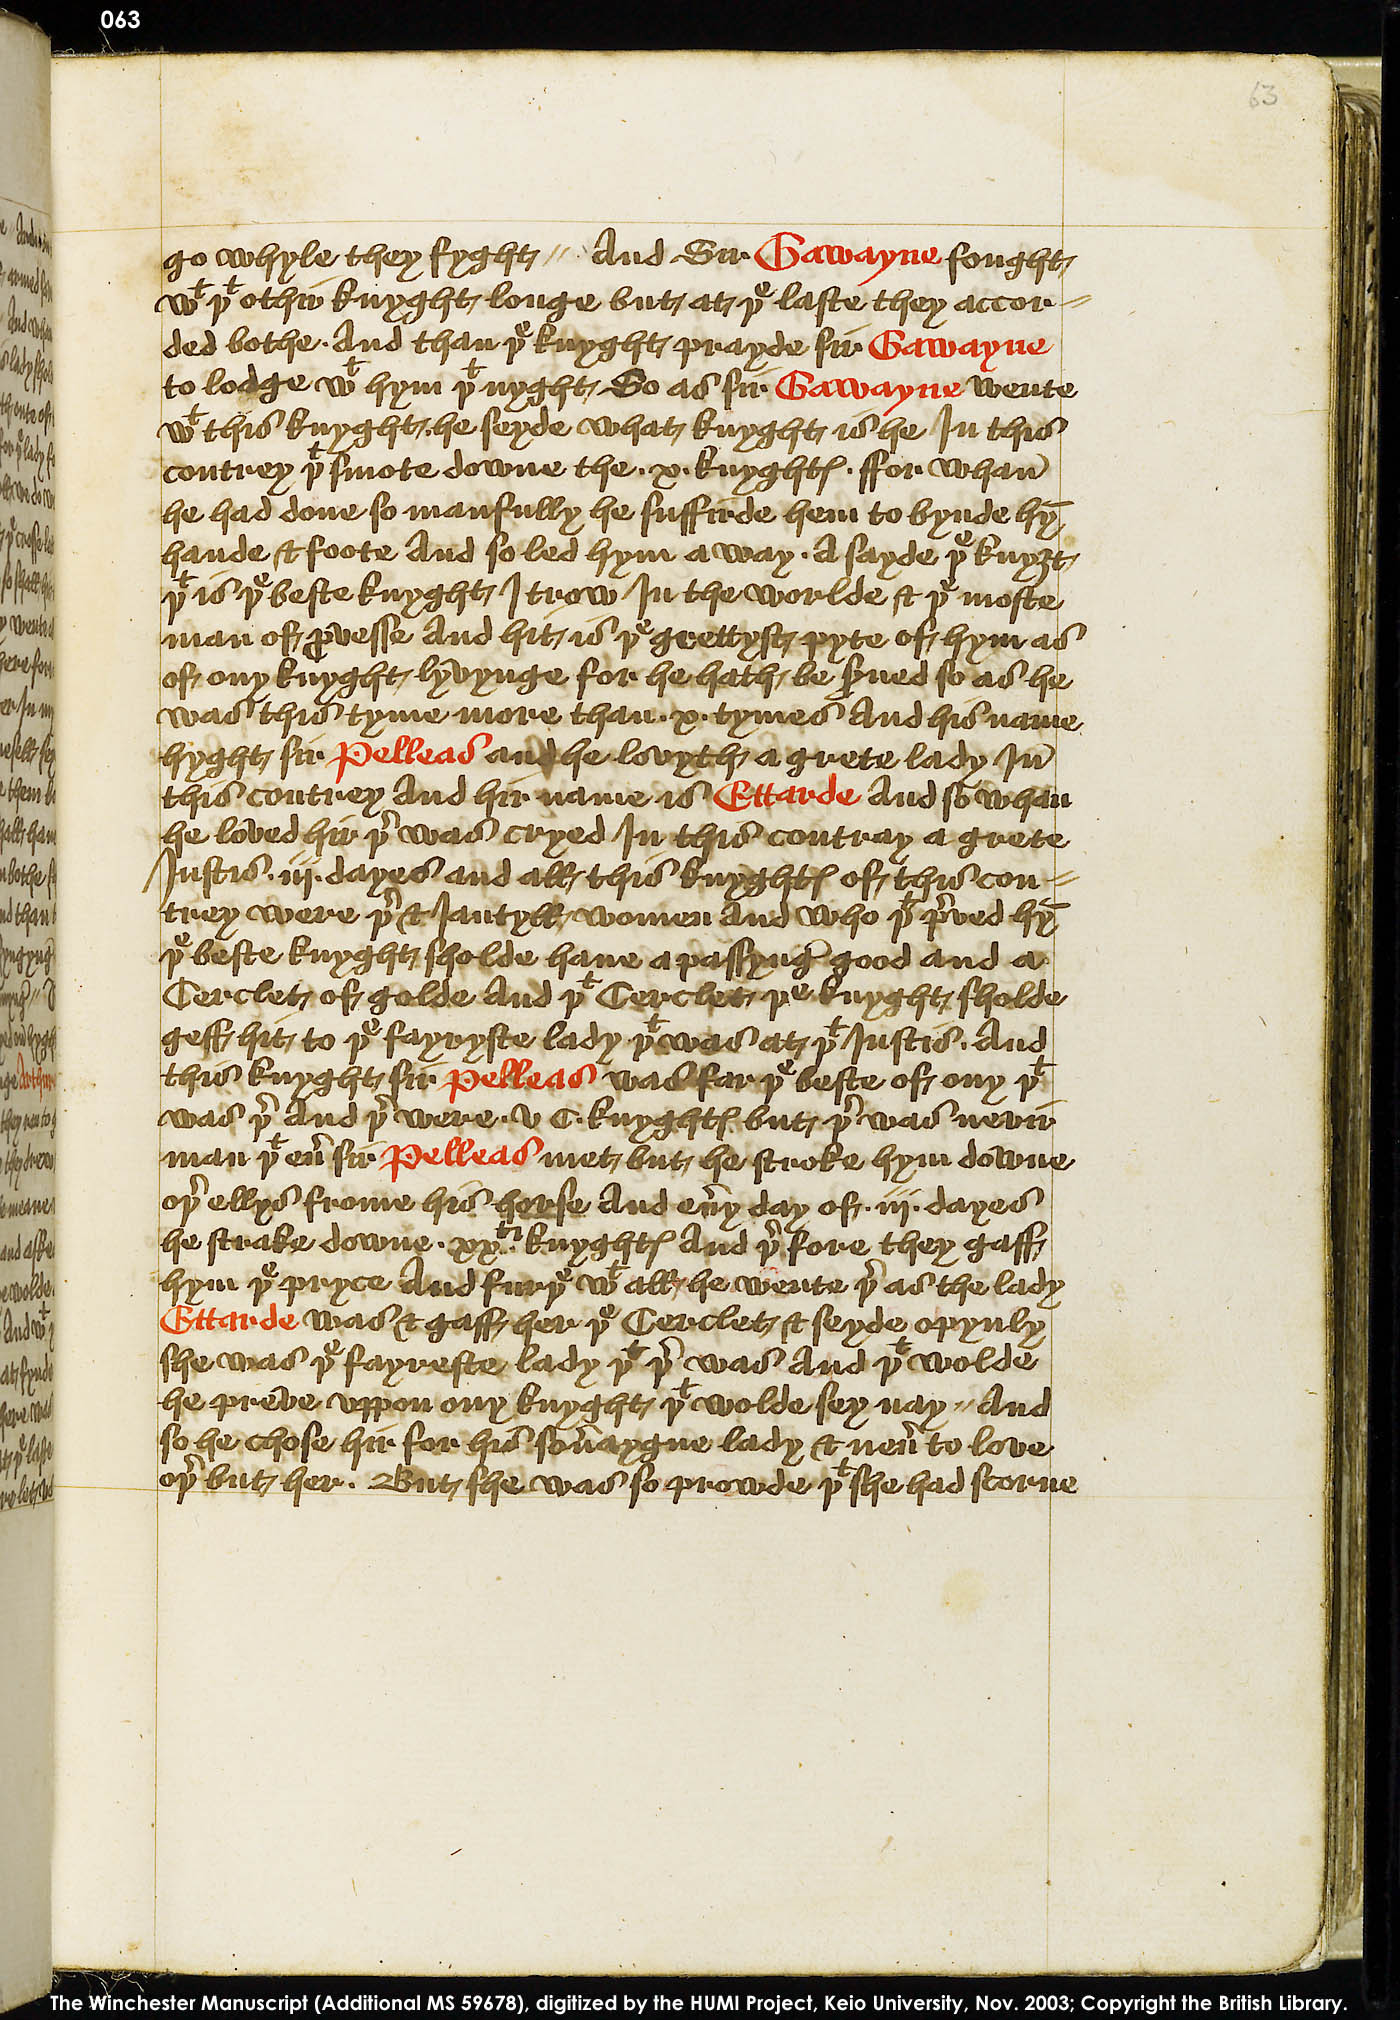 Folio 63r